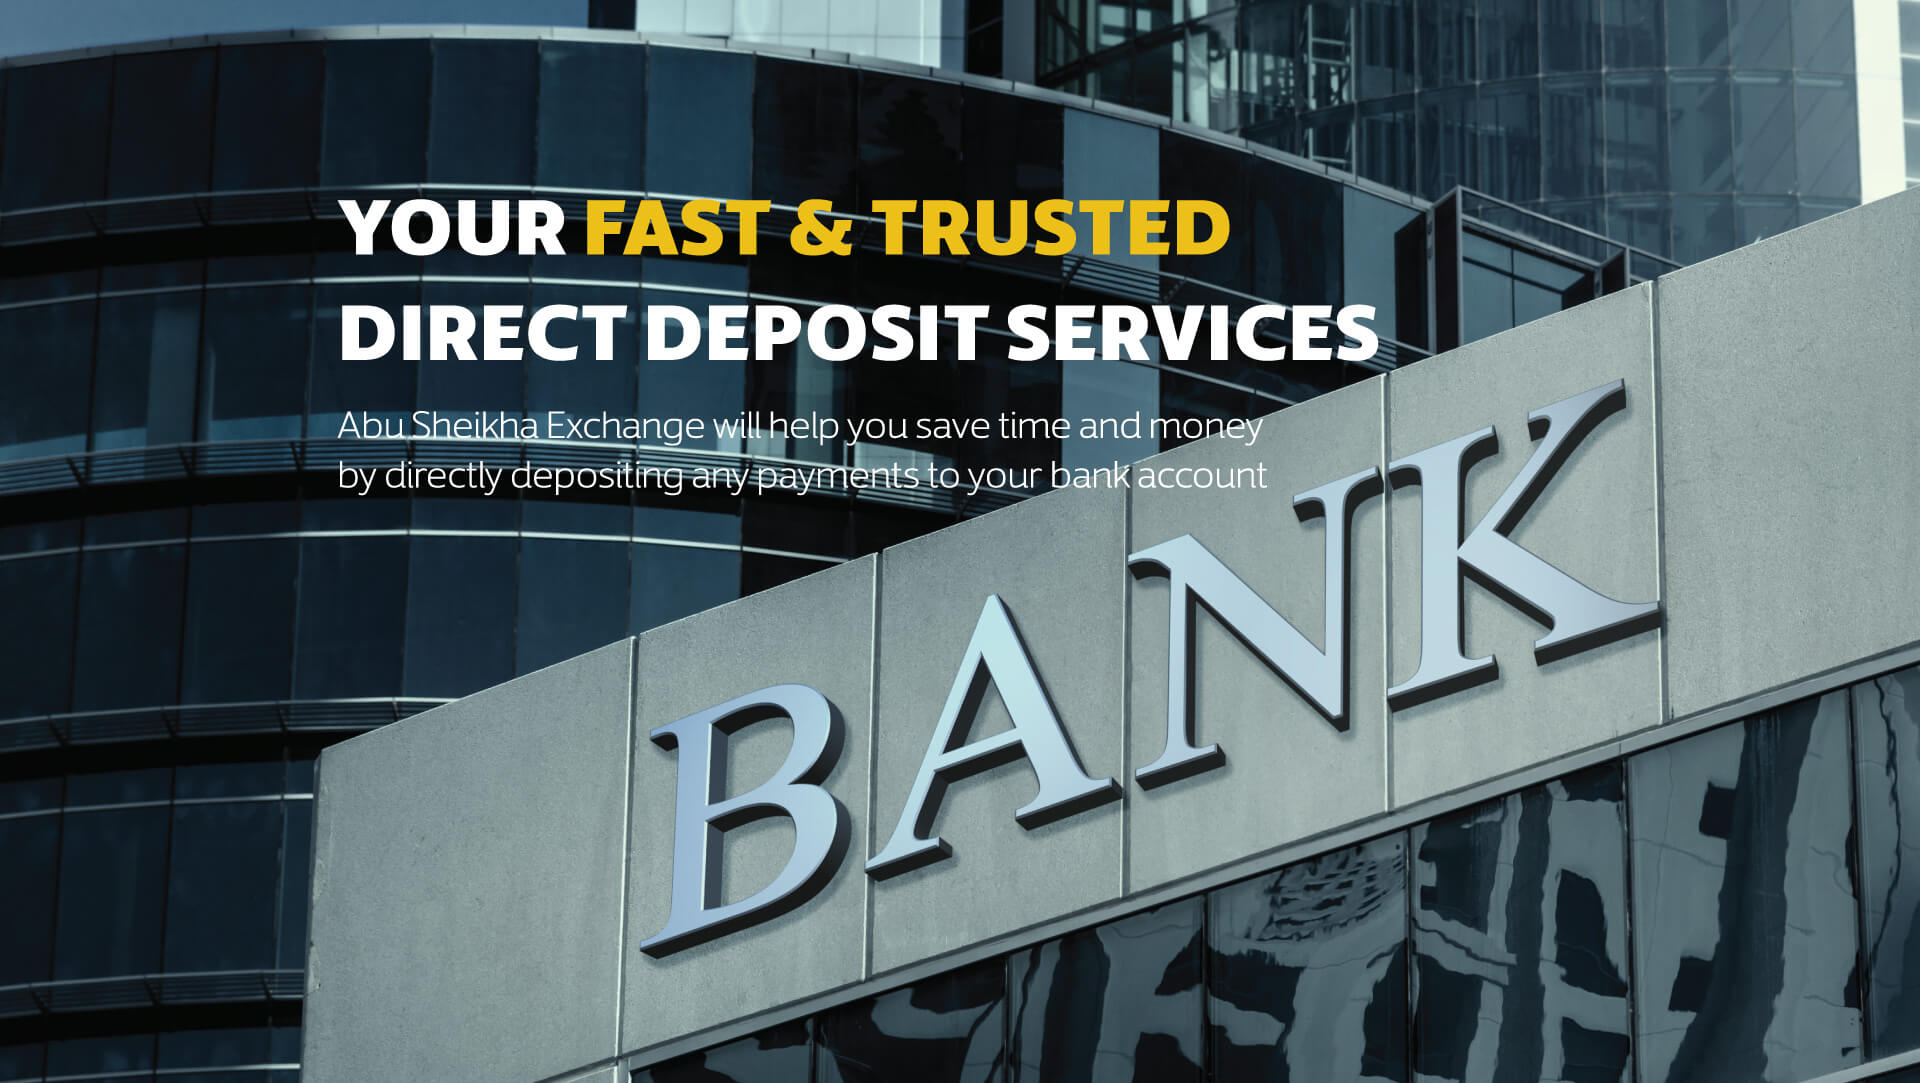 Td direct deposit information